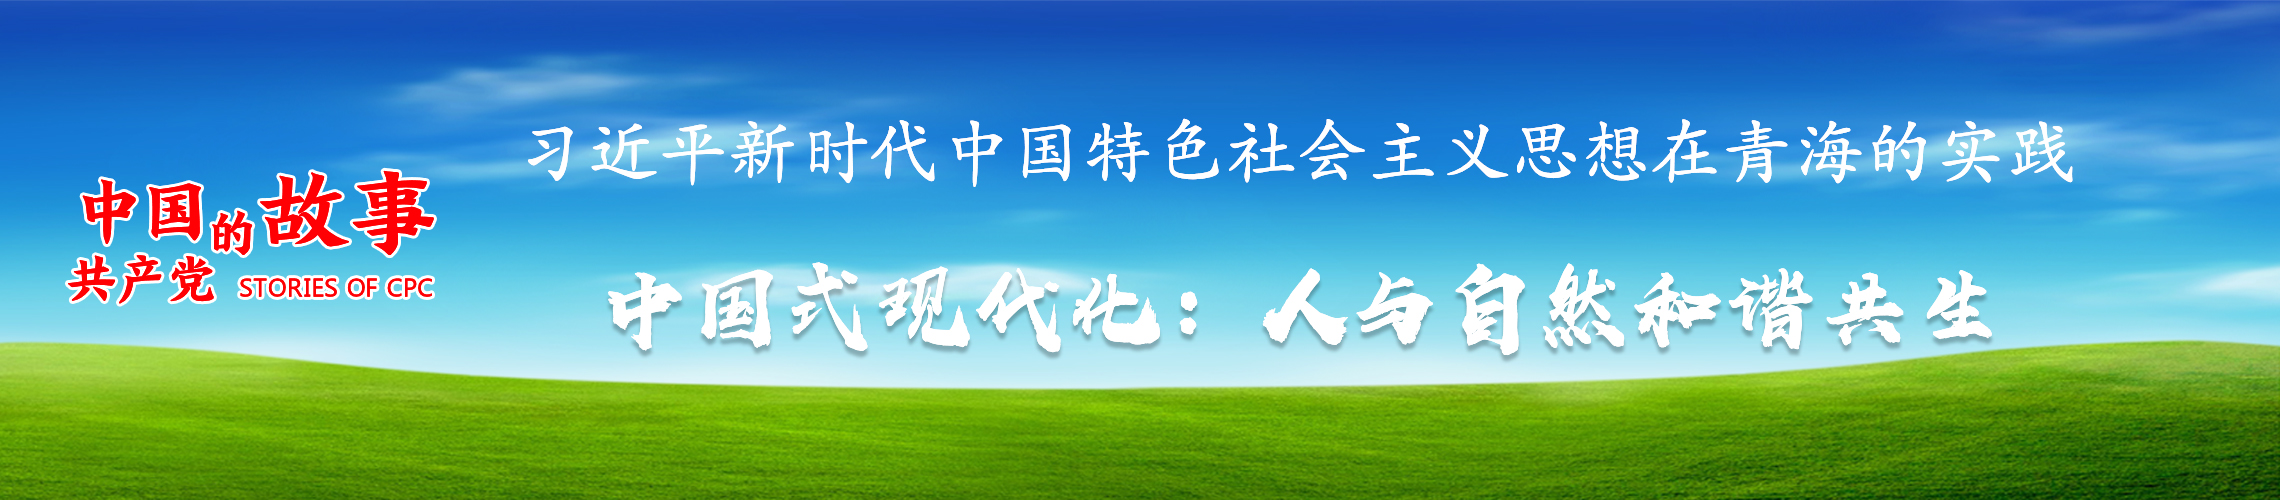 中文网站banner.jpg